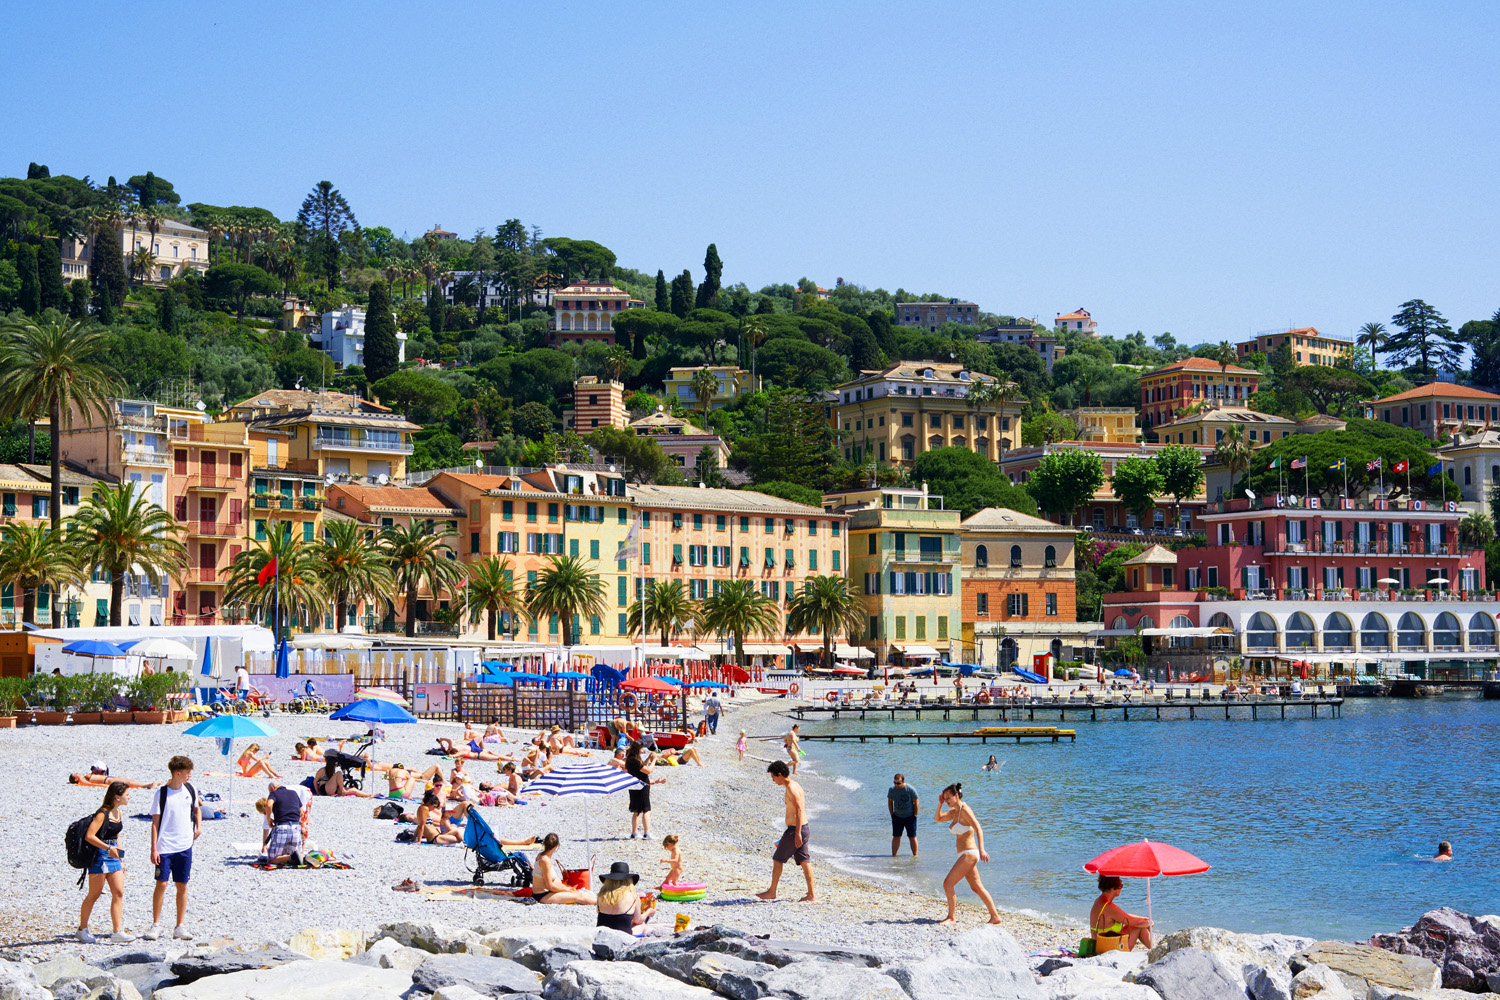 Portofino coastline